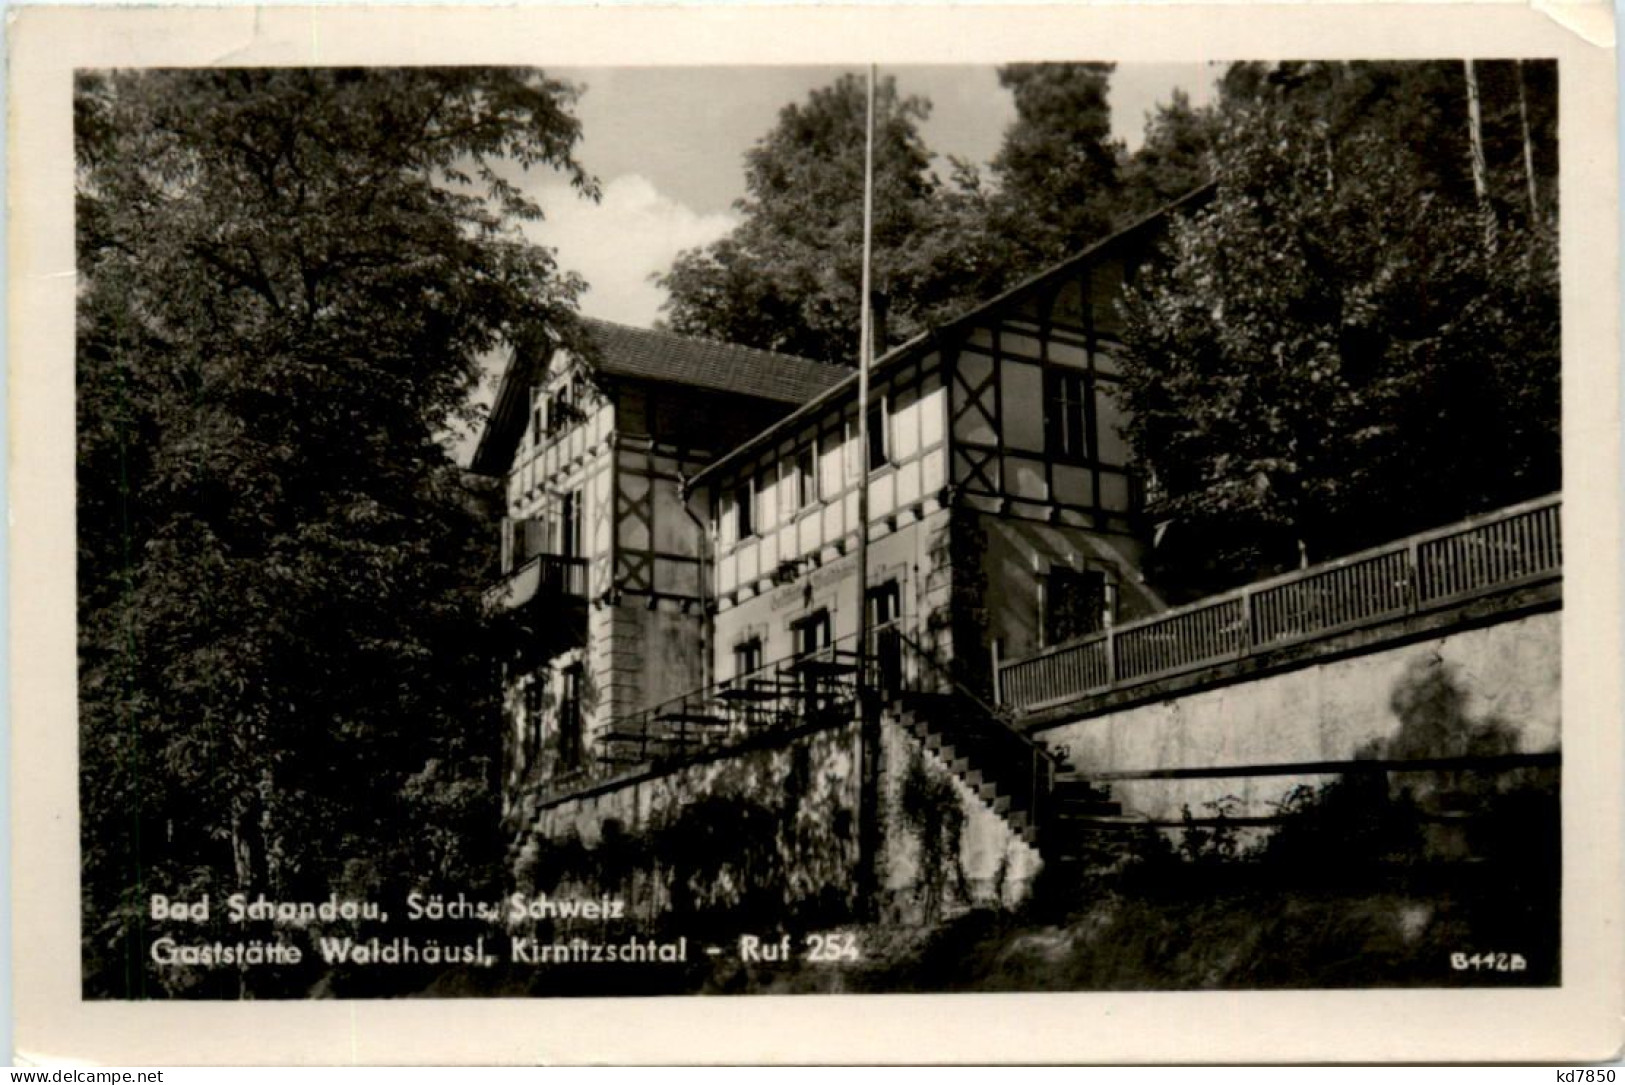 Bad Schandau, Gaststätte Waldhäusel - Bad Schandau